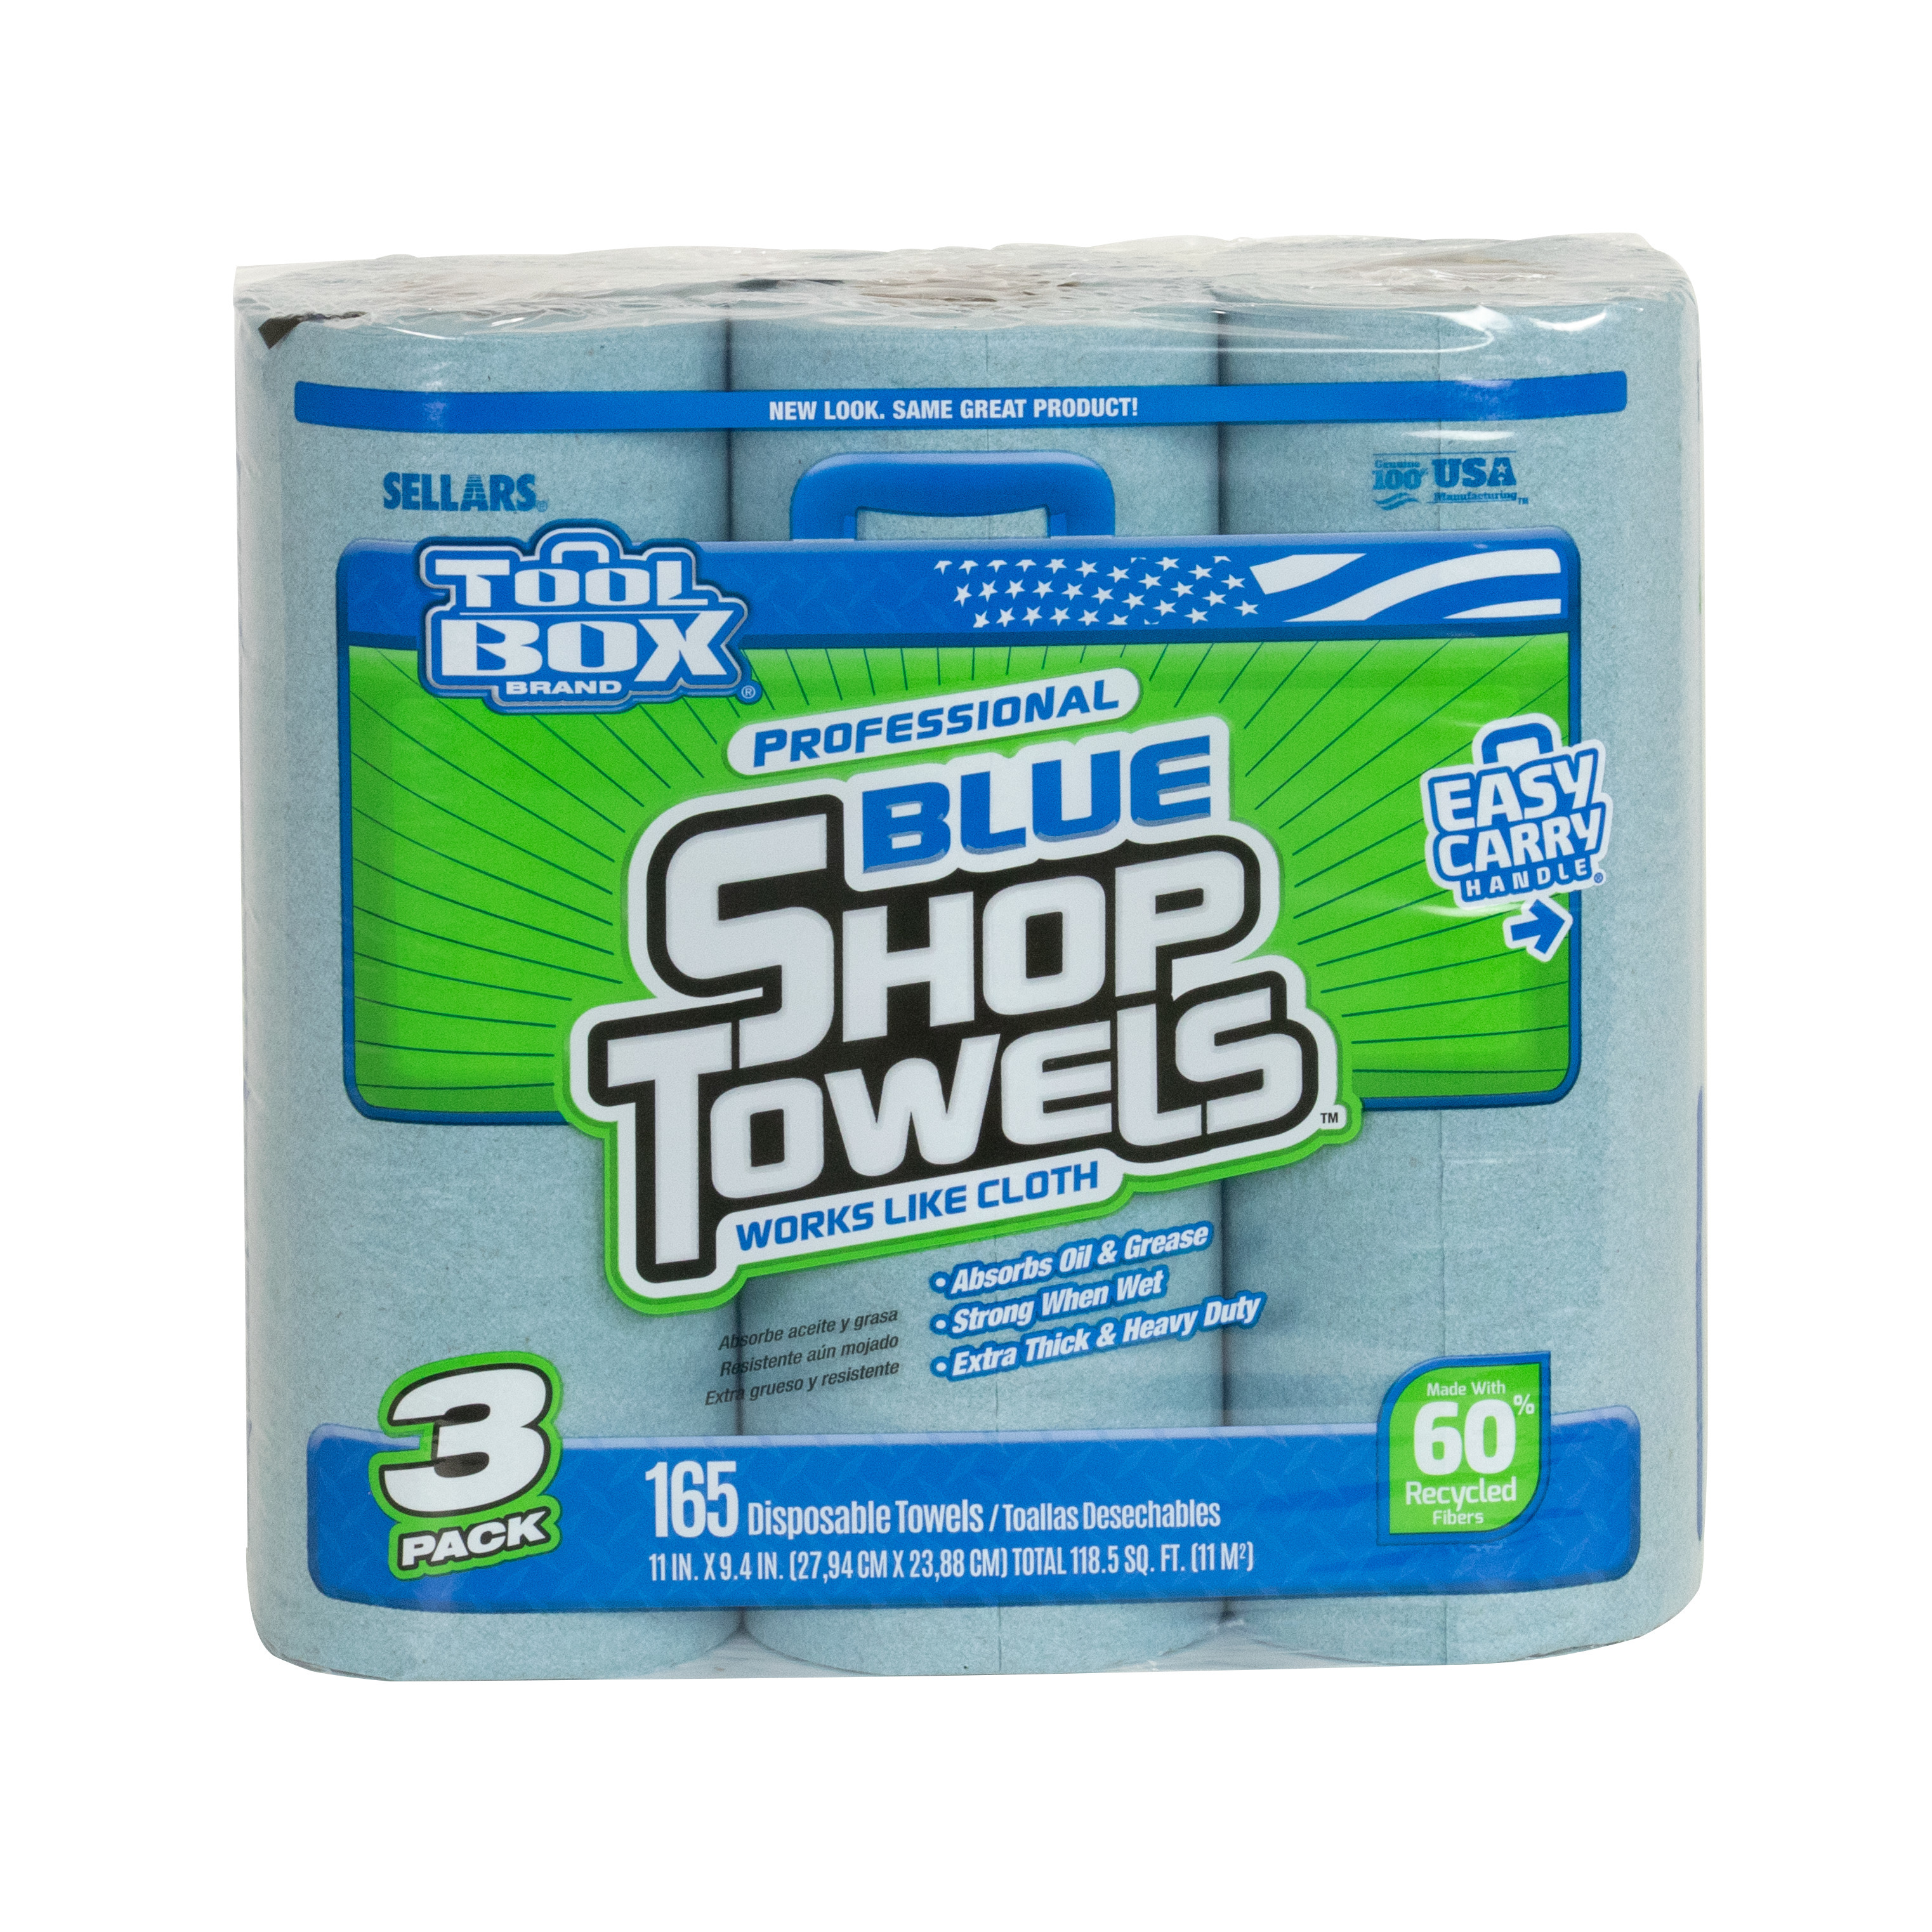 3 pack of Sellars toolbox z400 blue shop towels